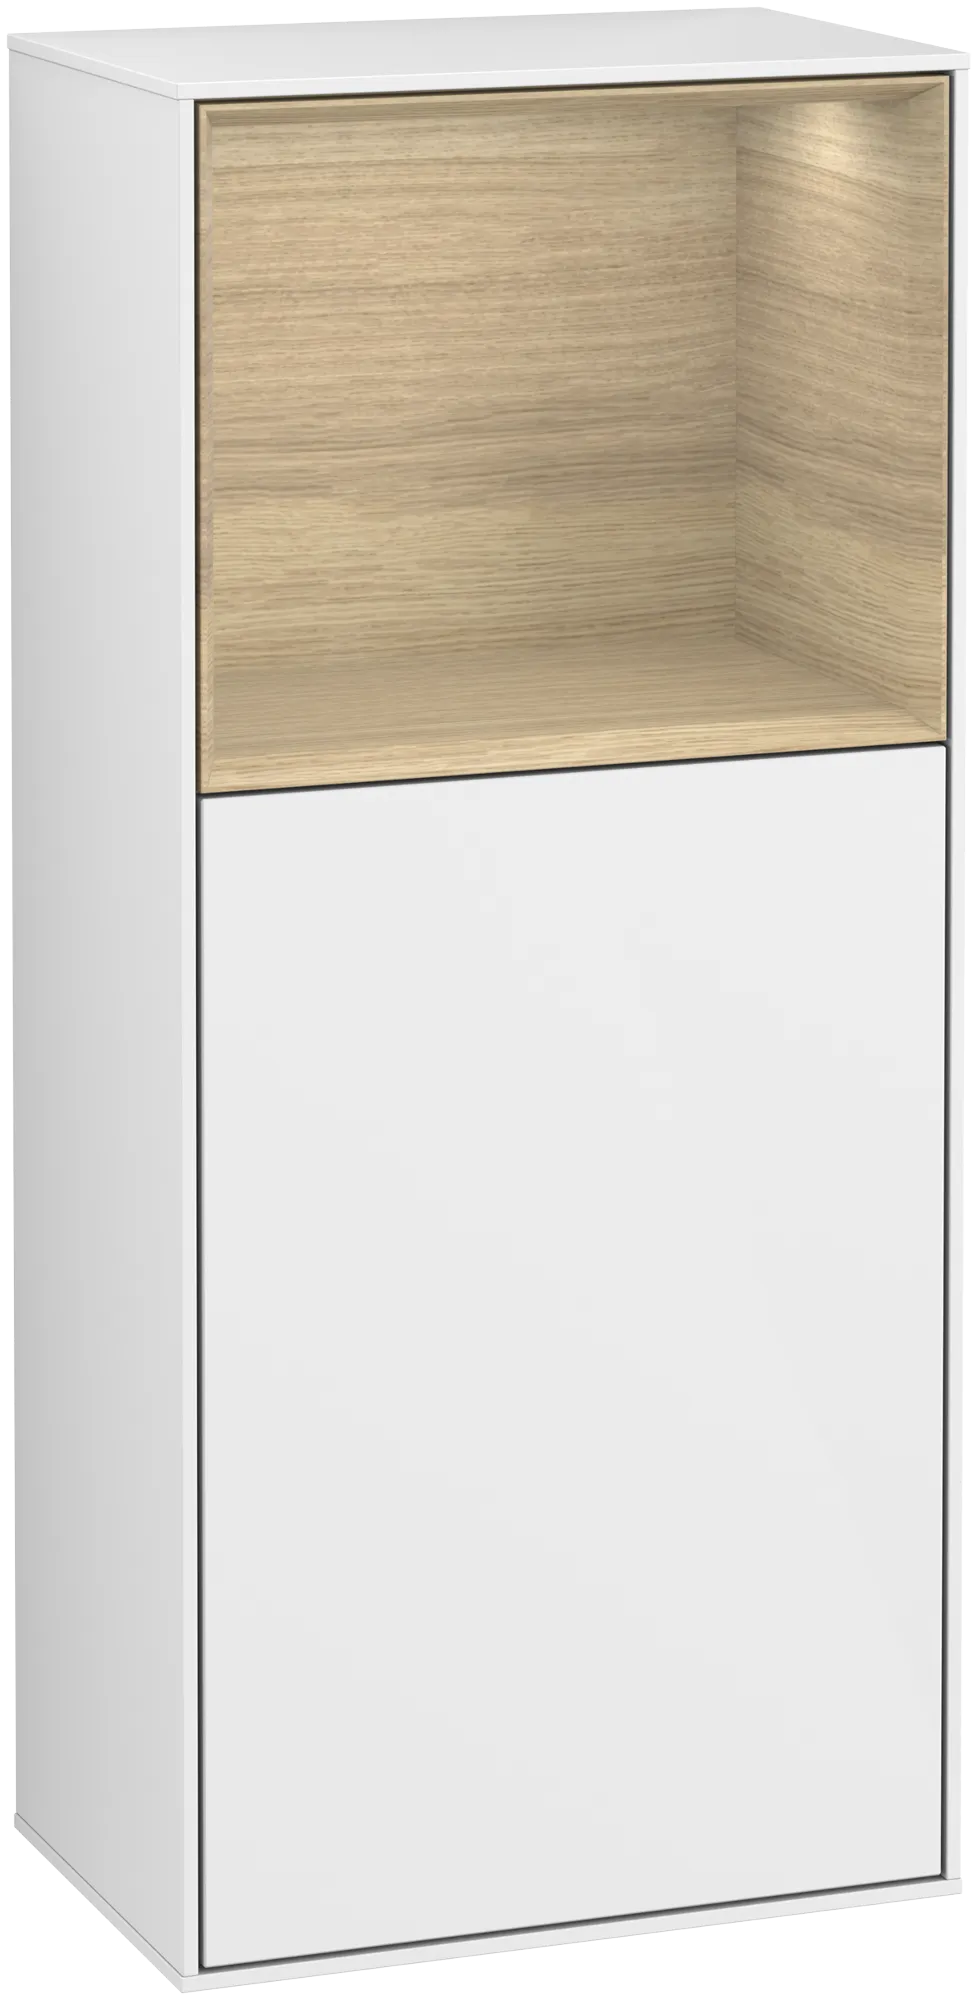 Bild von VILLEROY BOCH Finion Seitenschrank, mit Beleuchtung, 1 Tür, 418 x 936 x 270 mm, Glossy White Lacquer / Oak Veneer #G500PCGF